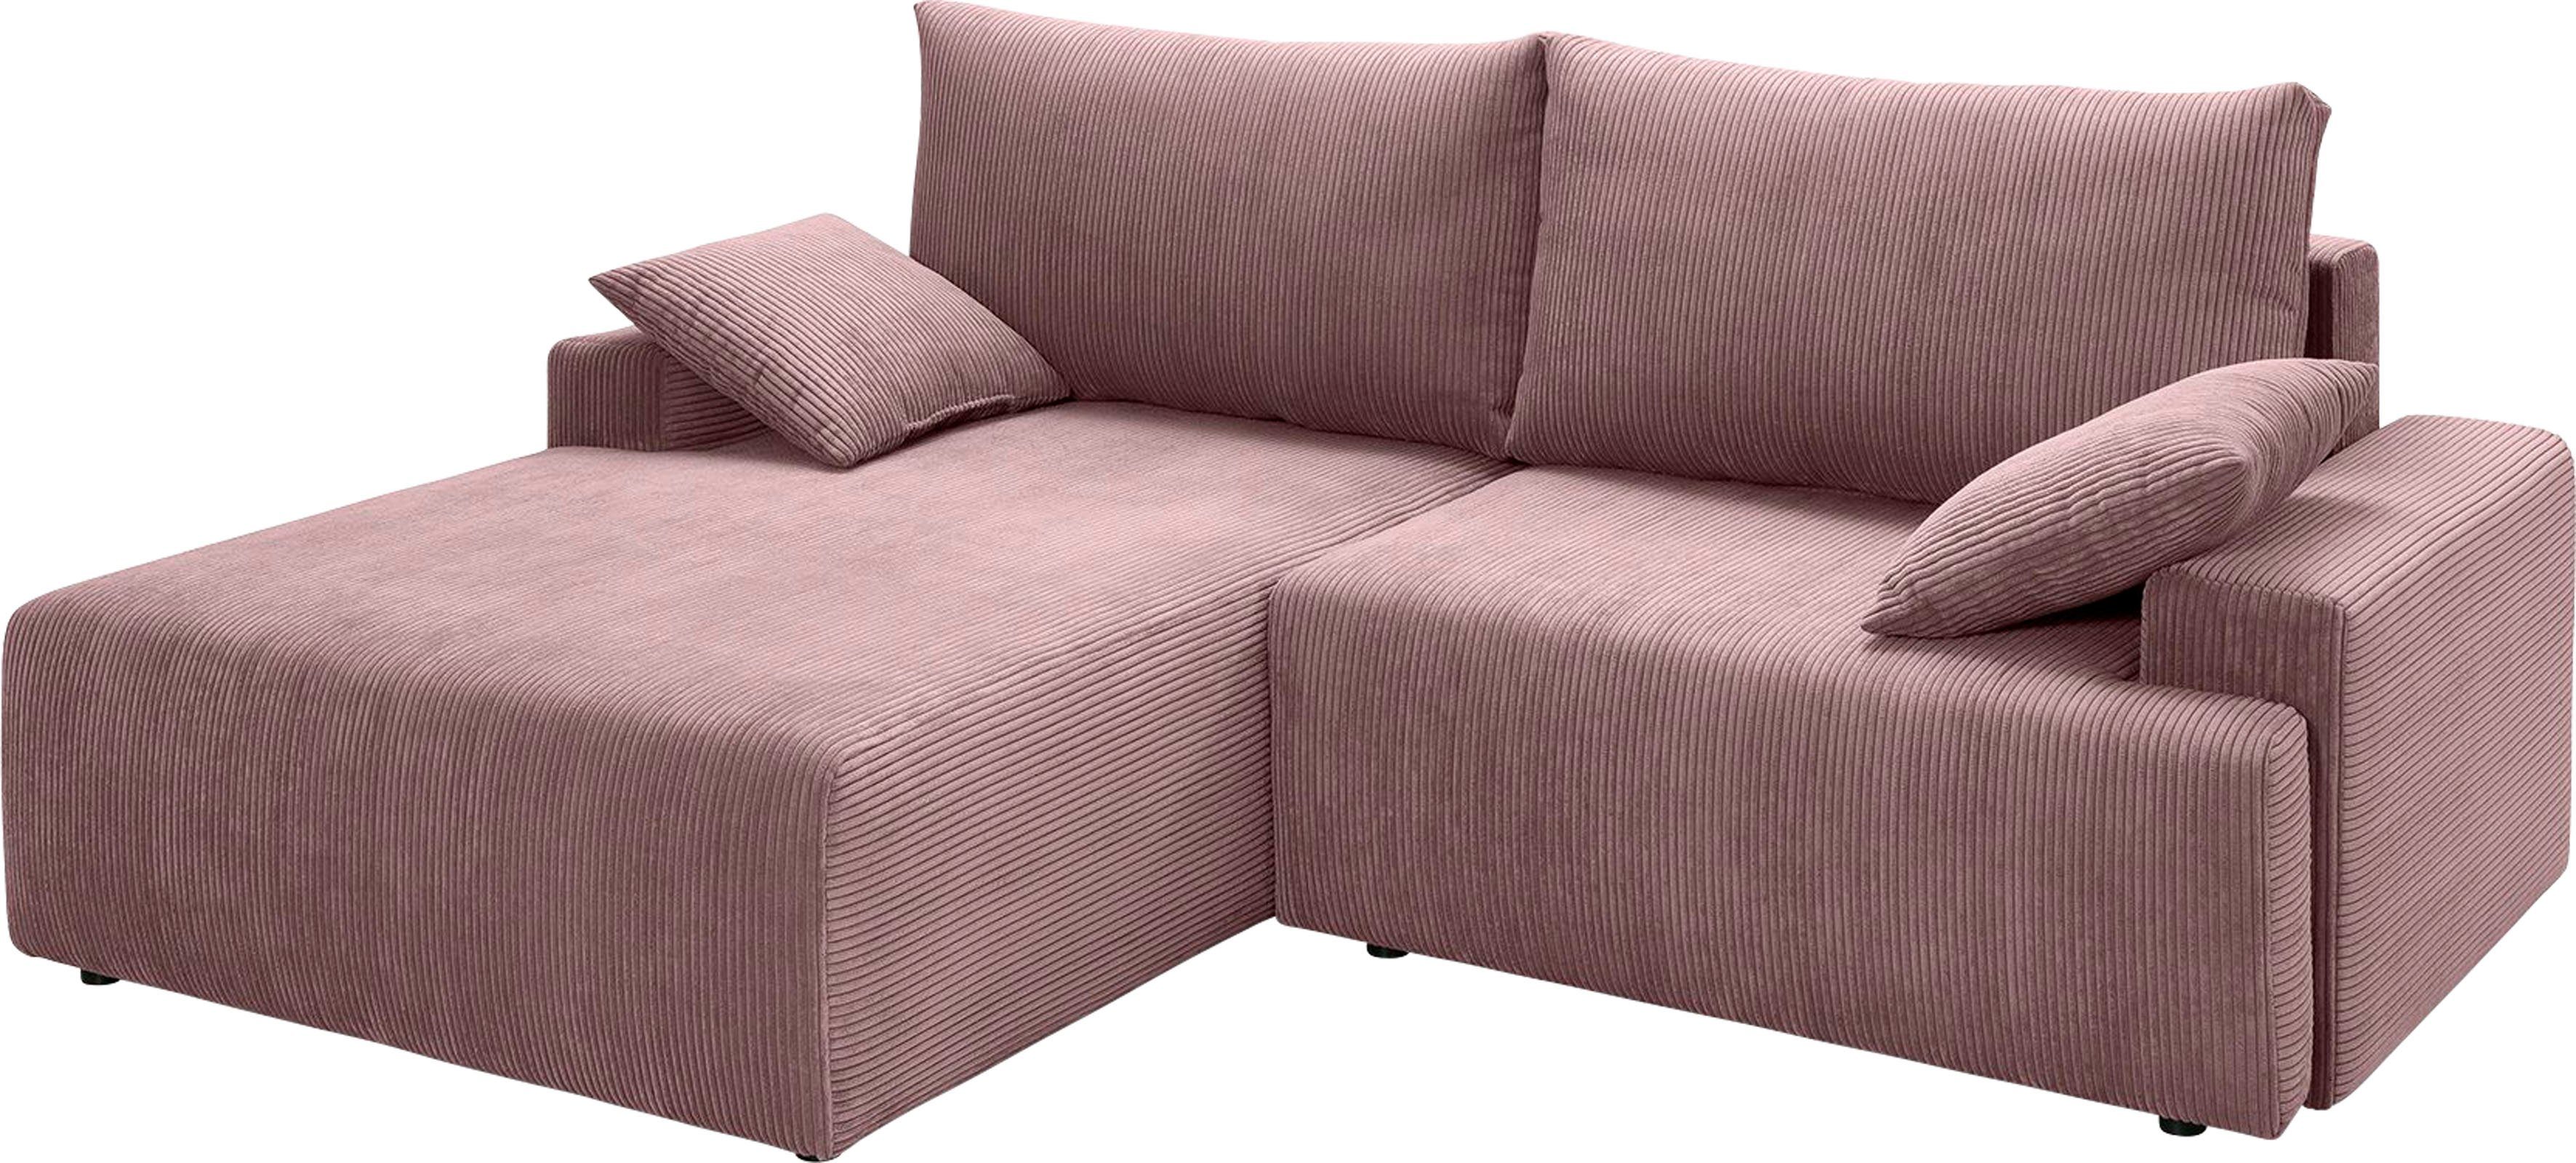 fashion inklusive sofa verschiedenen Cord-Farben und exxpo Bettkasten - rose Ecksofa Bettfunktion Orinoko, in